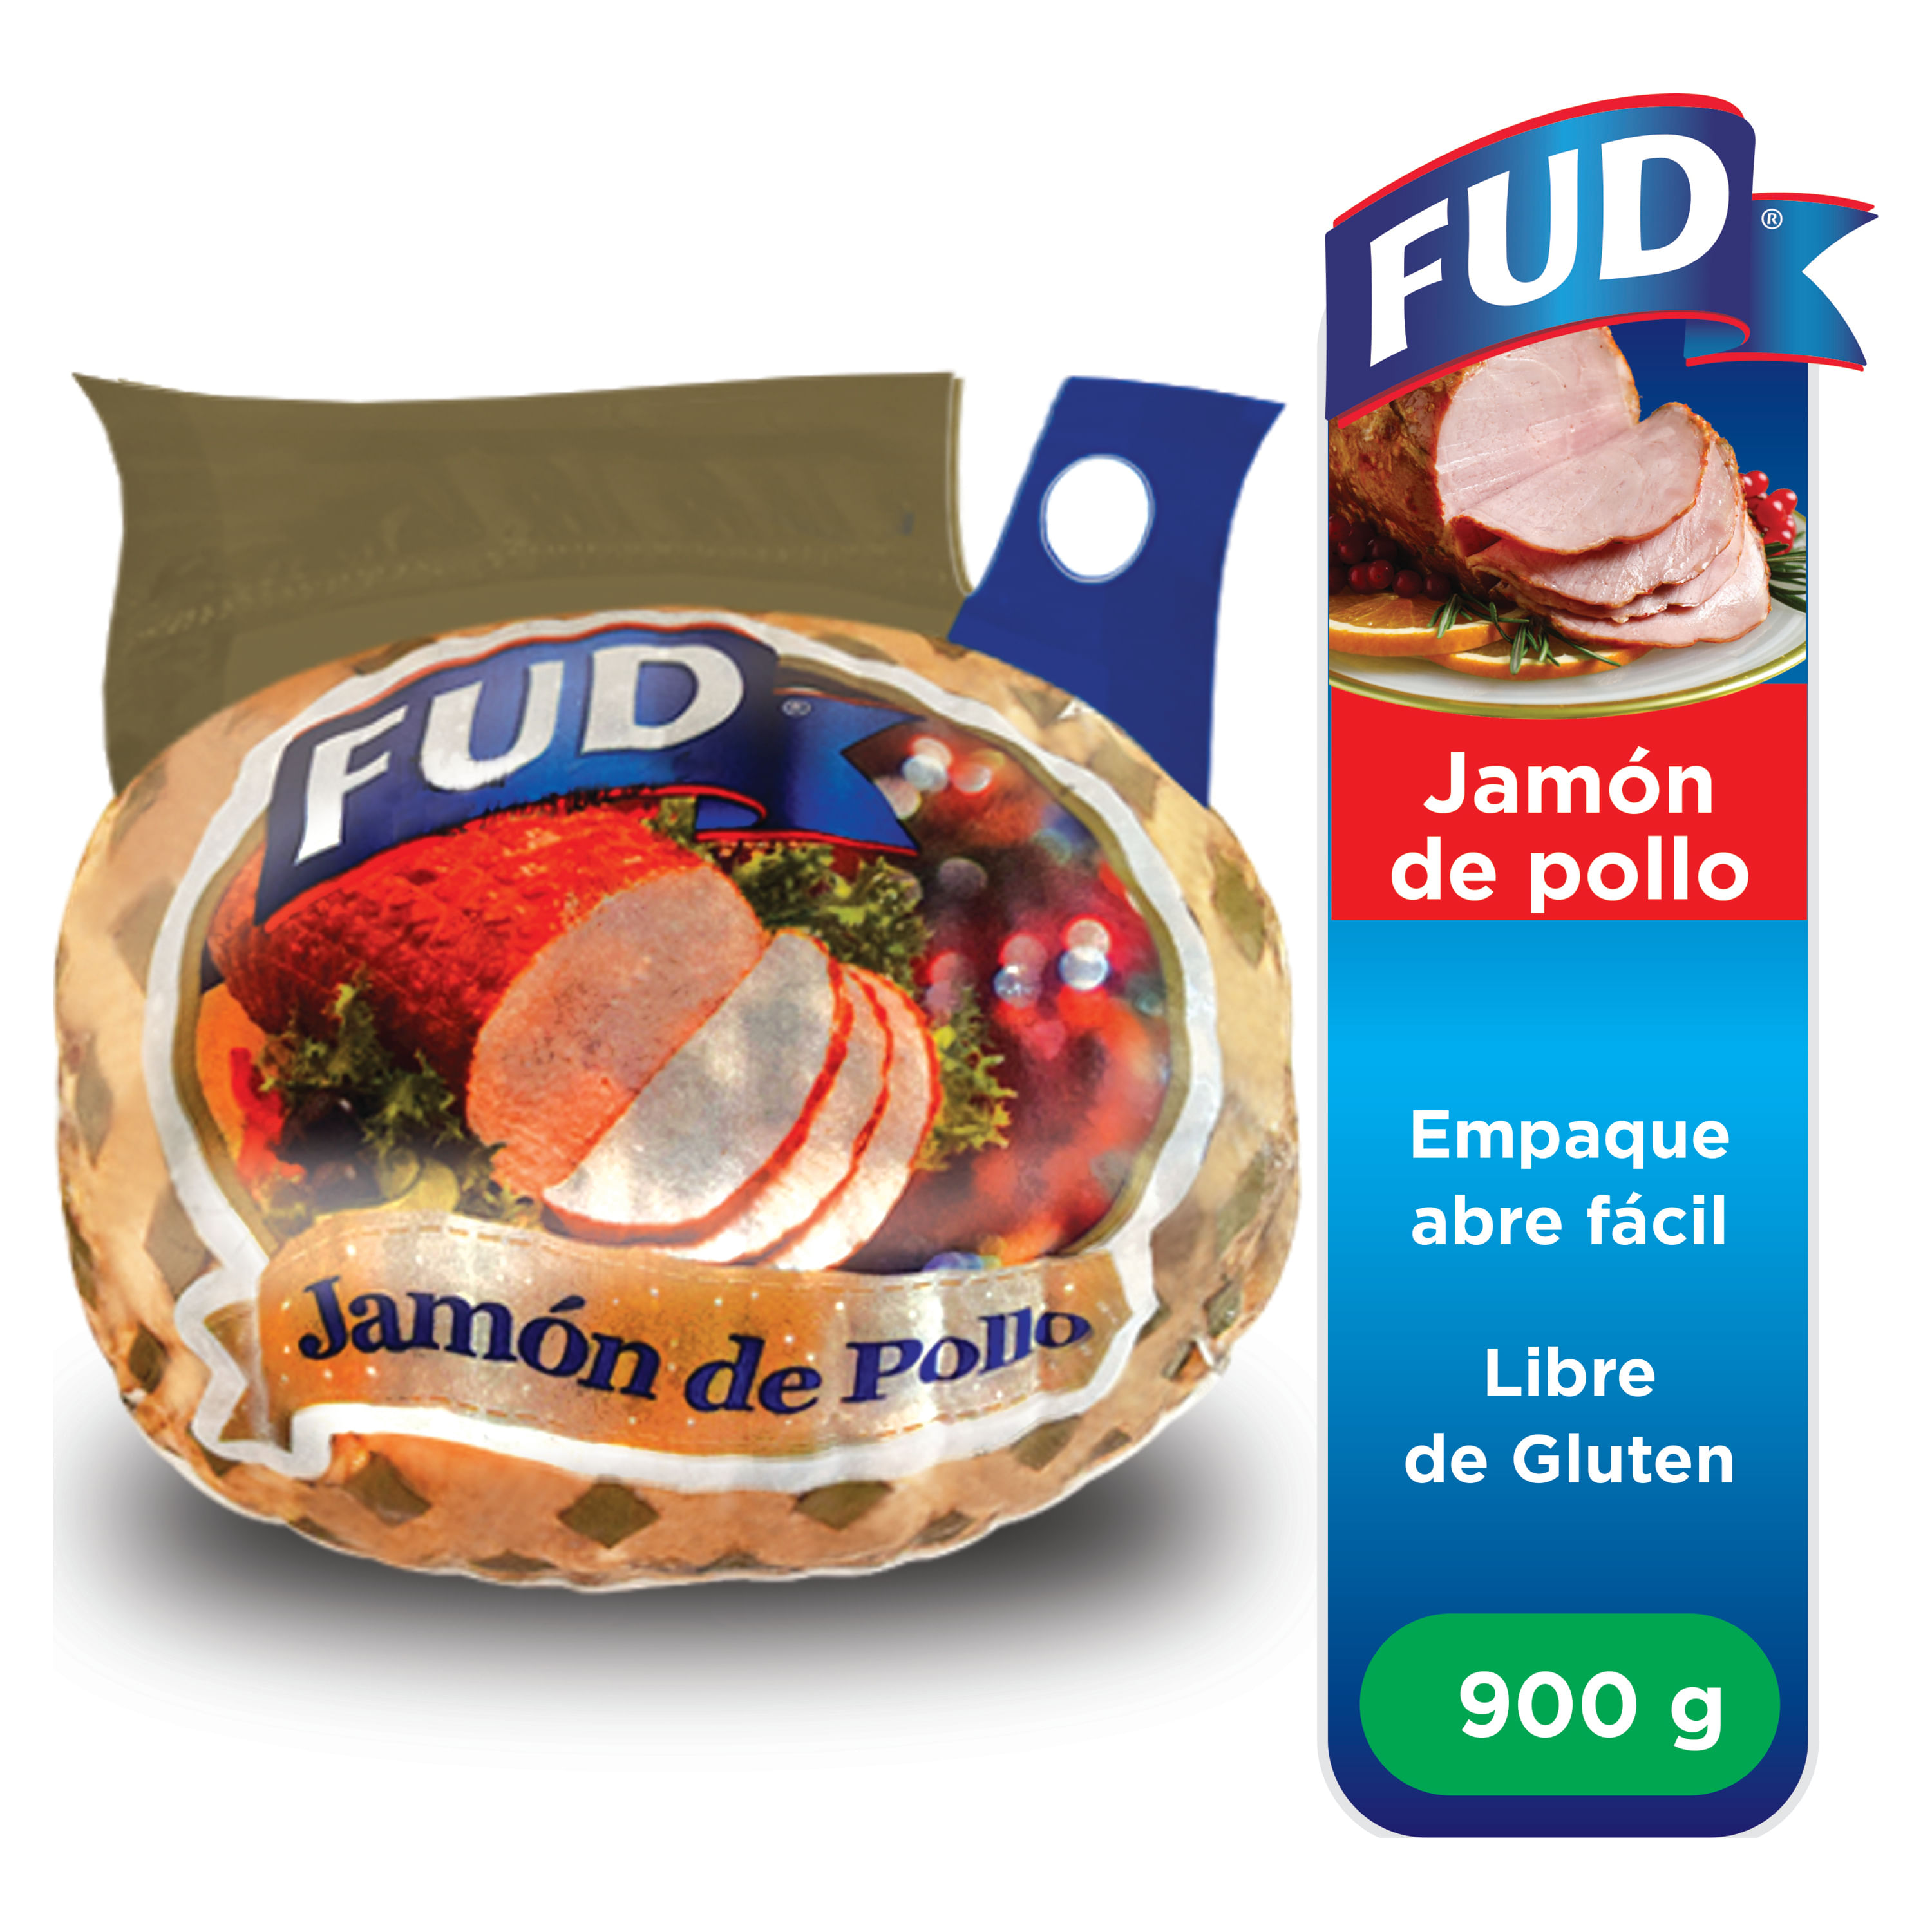 Jam-n-de-Pollo-Fud-900gr-1-65960